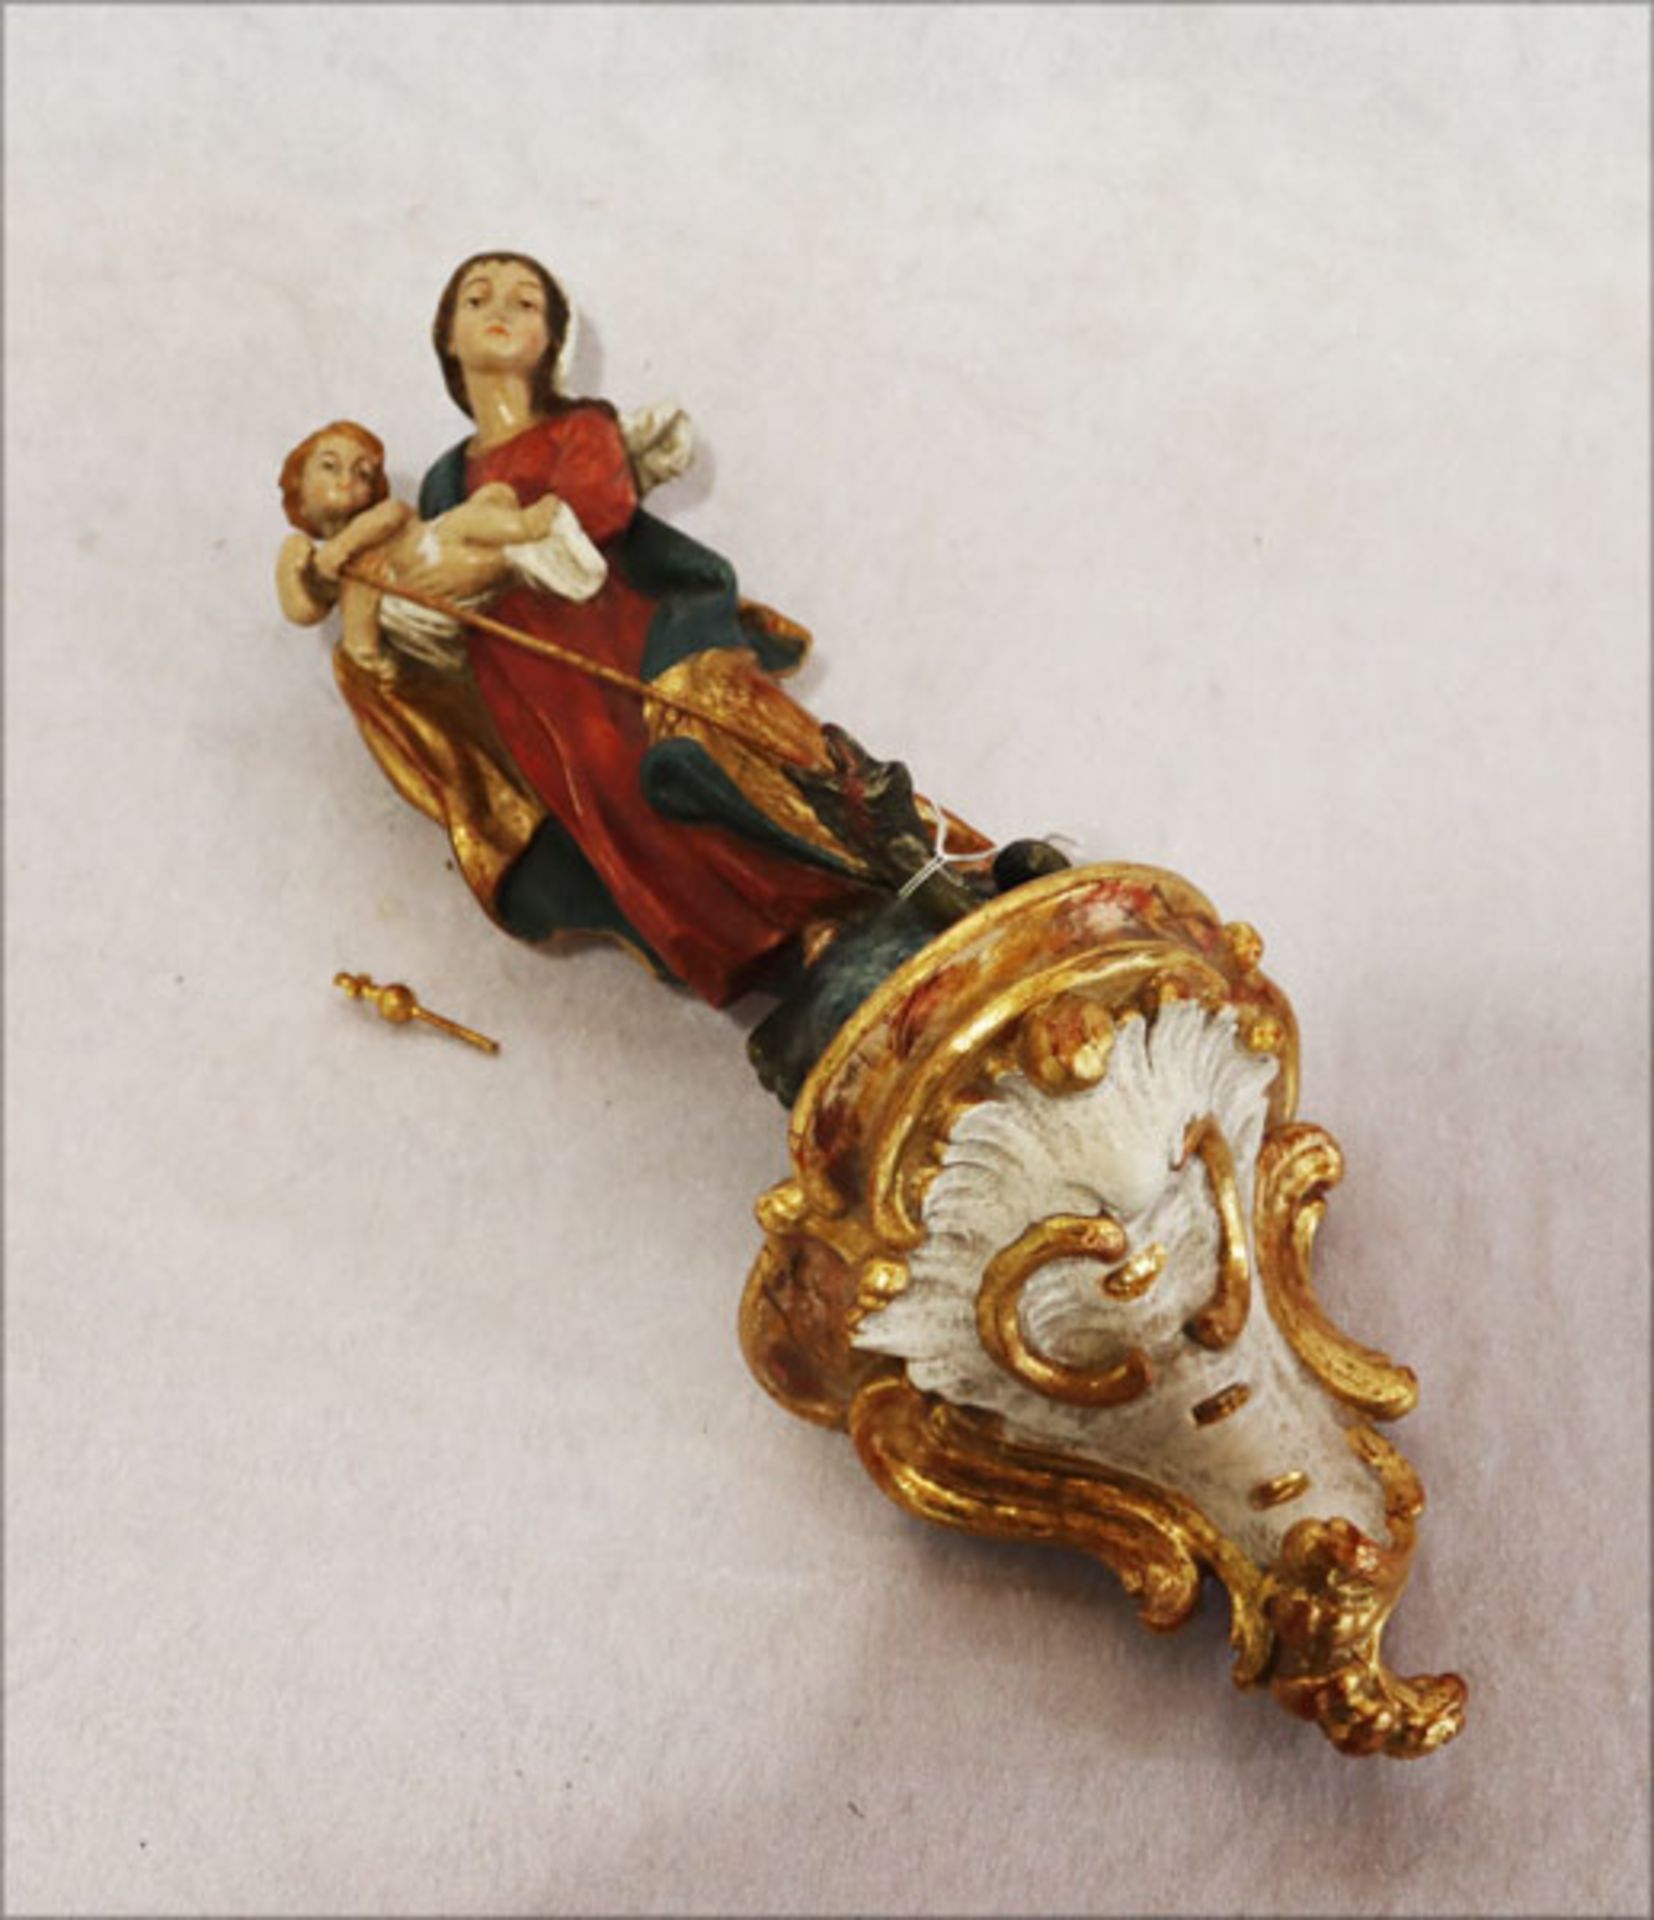 Holzfigur 'Maria Immaculata', farbig gefaßt, auf Wandsockel befestigt, H 39 cm, teils geklebt und